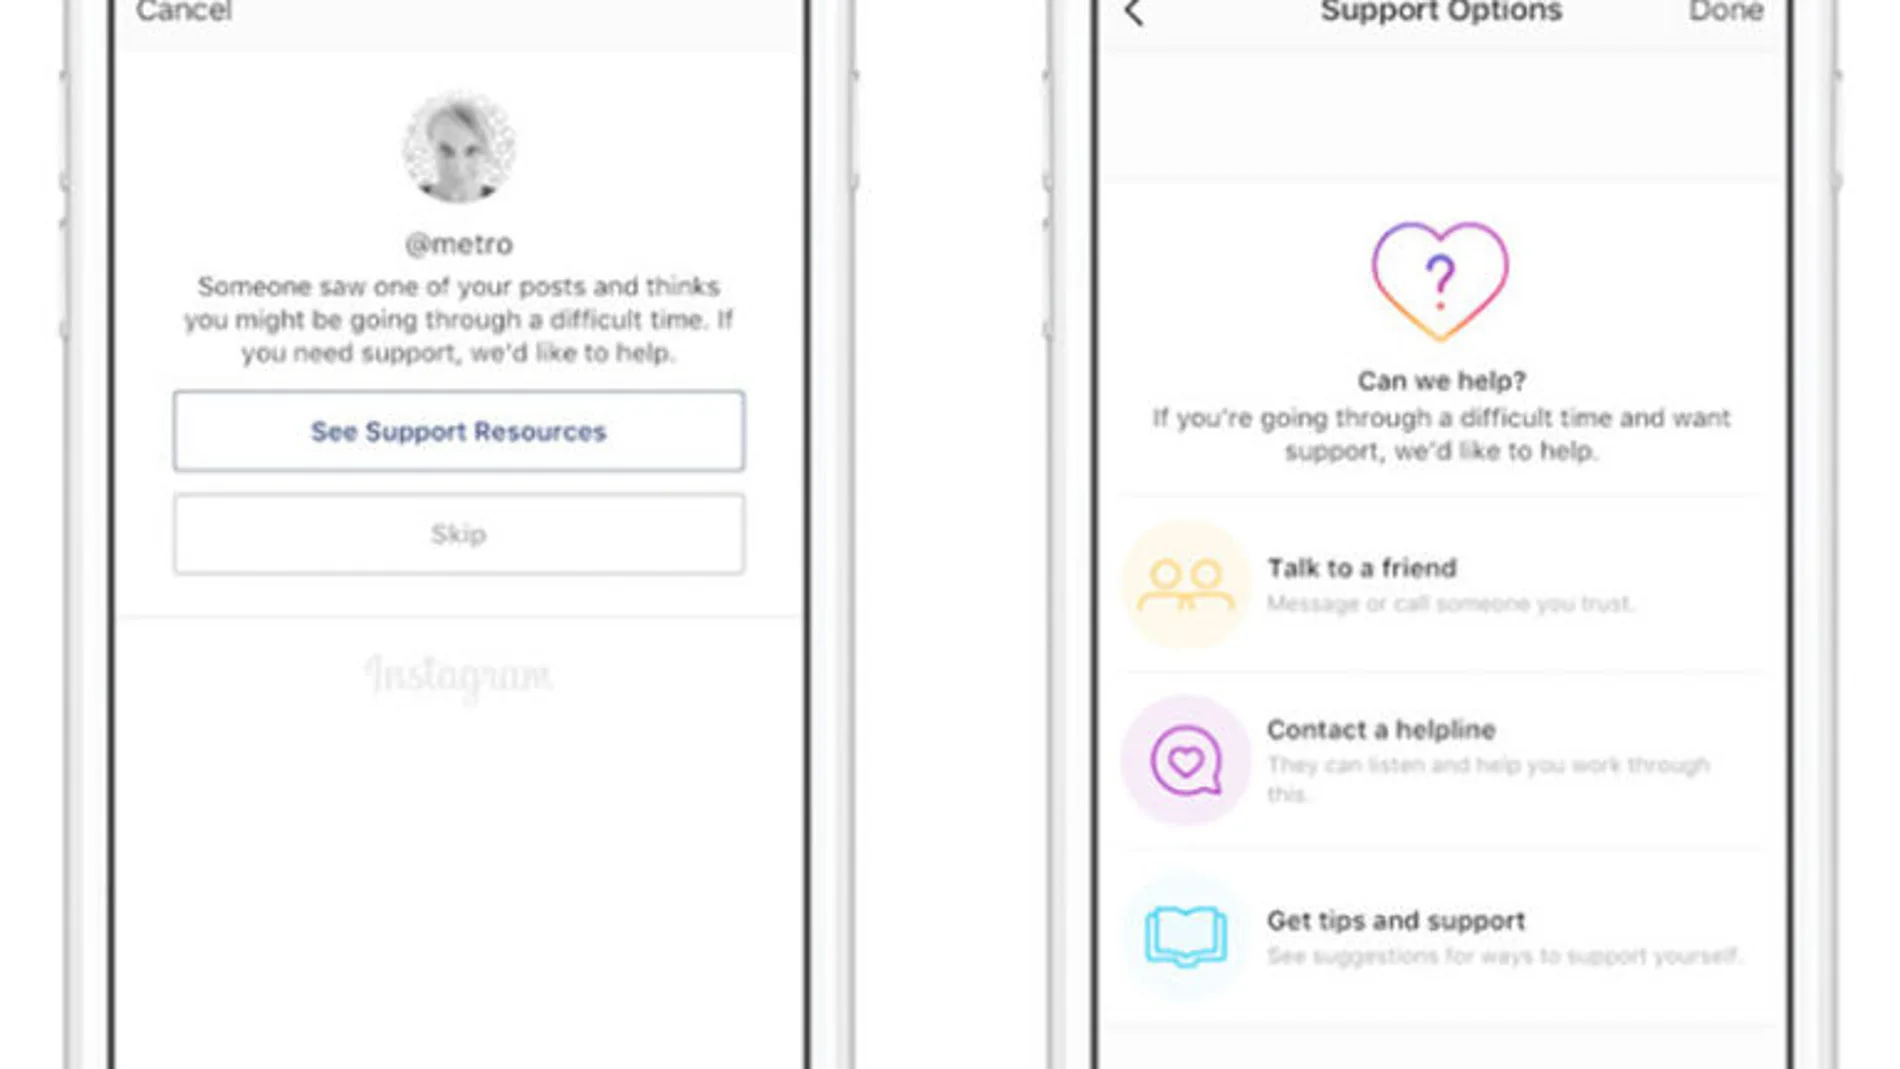 La red social Instagram lanza herramientas para prevenir el suicidio